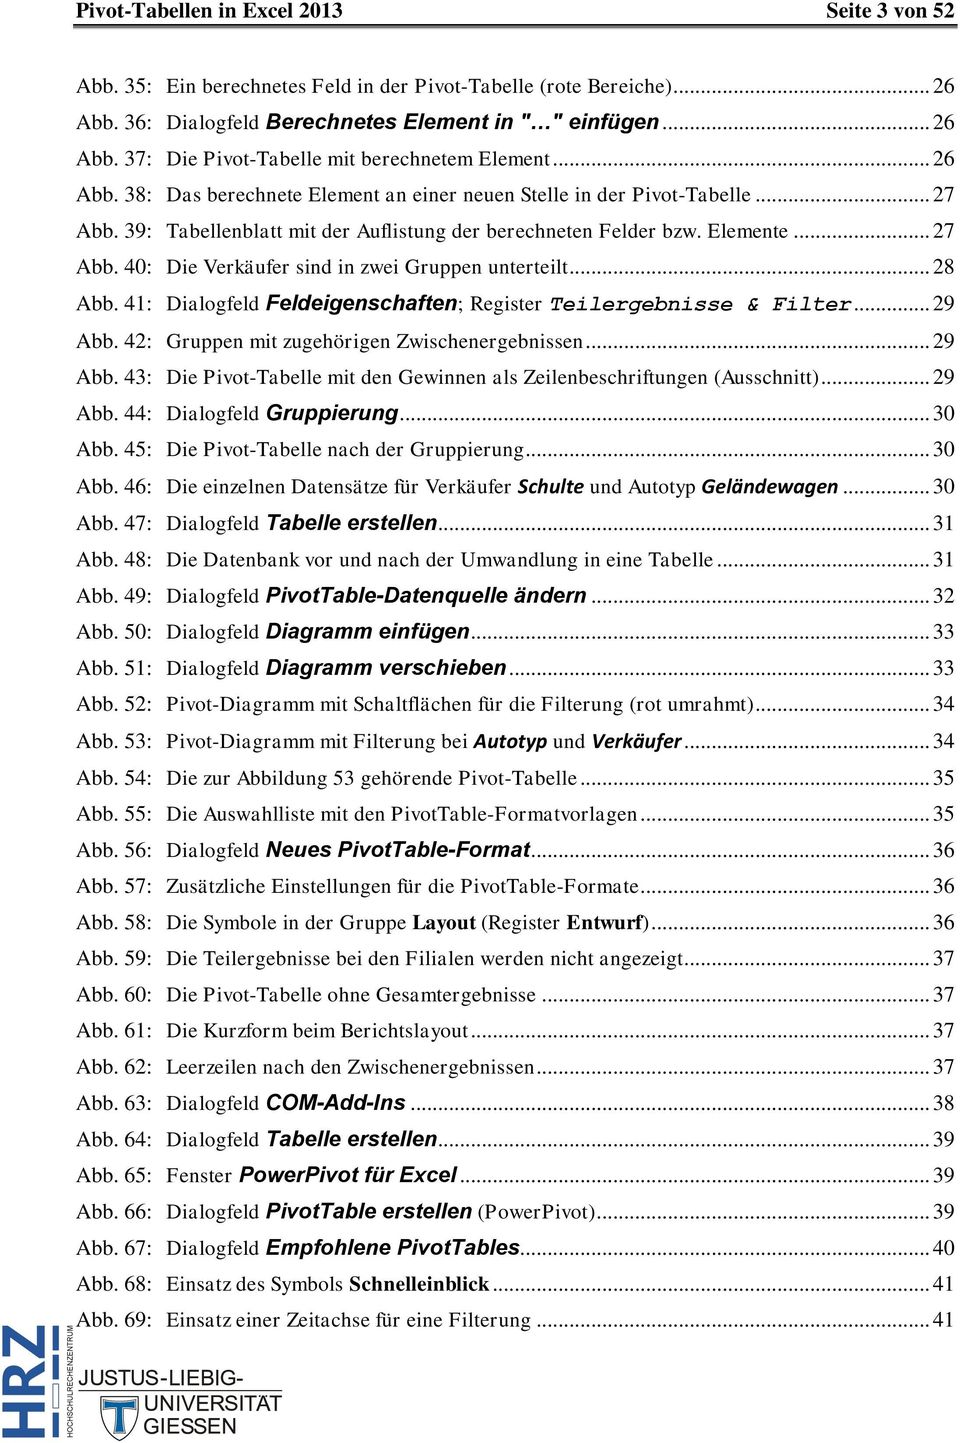 .. 28 Abb. 41: Dialogfeld Feldeigenschaften; Register Teilergebnisse & Filter... 29 Abb. 42: Gruppen mit zugehörigen Zwischenergebnissen... 29 Abb. 43: Die Pivot-Tabelle mit den Gewinnen als Zeilenbeschriftungen (Ausschnitt).